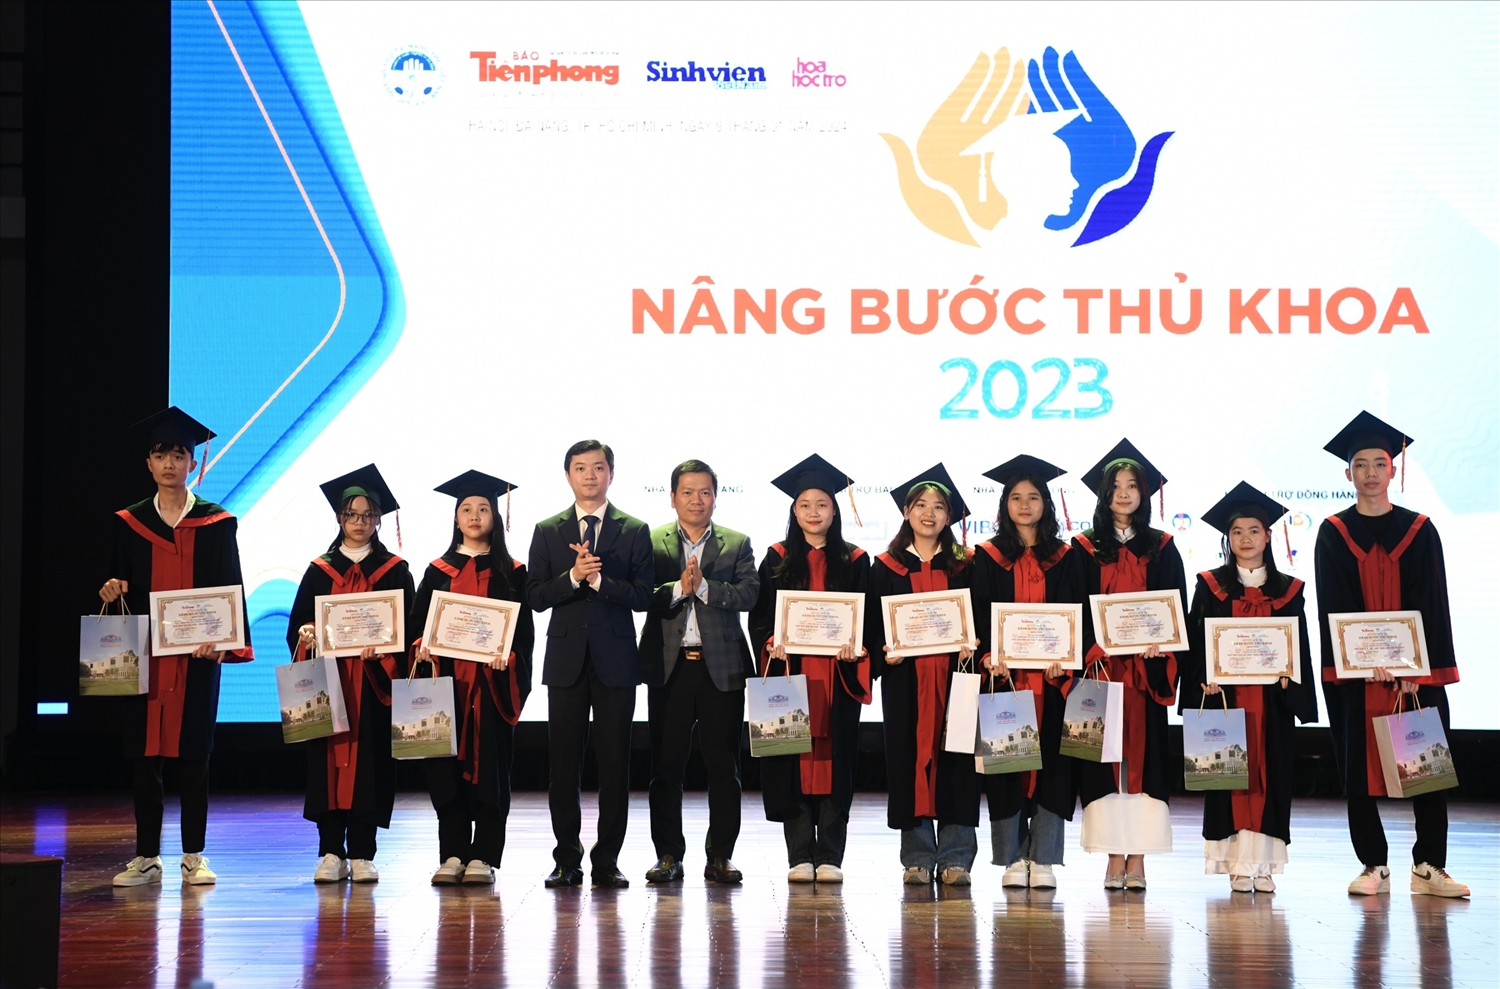 Anh Nguyễn Minh Triết, Bí thư Trung ương Đoàn TNCS Hồ Chí Minh, Chủ tịch Hội sinh viên Việt Nam và đại diện Nhà tài trợ trao học bổng cho các sinh viên 